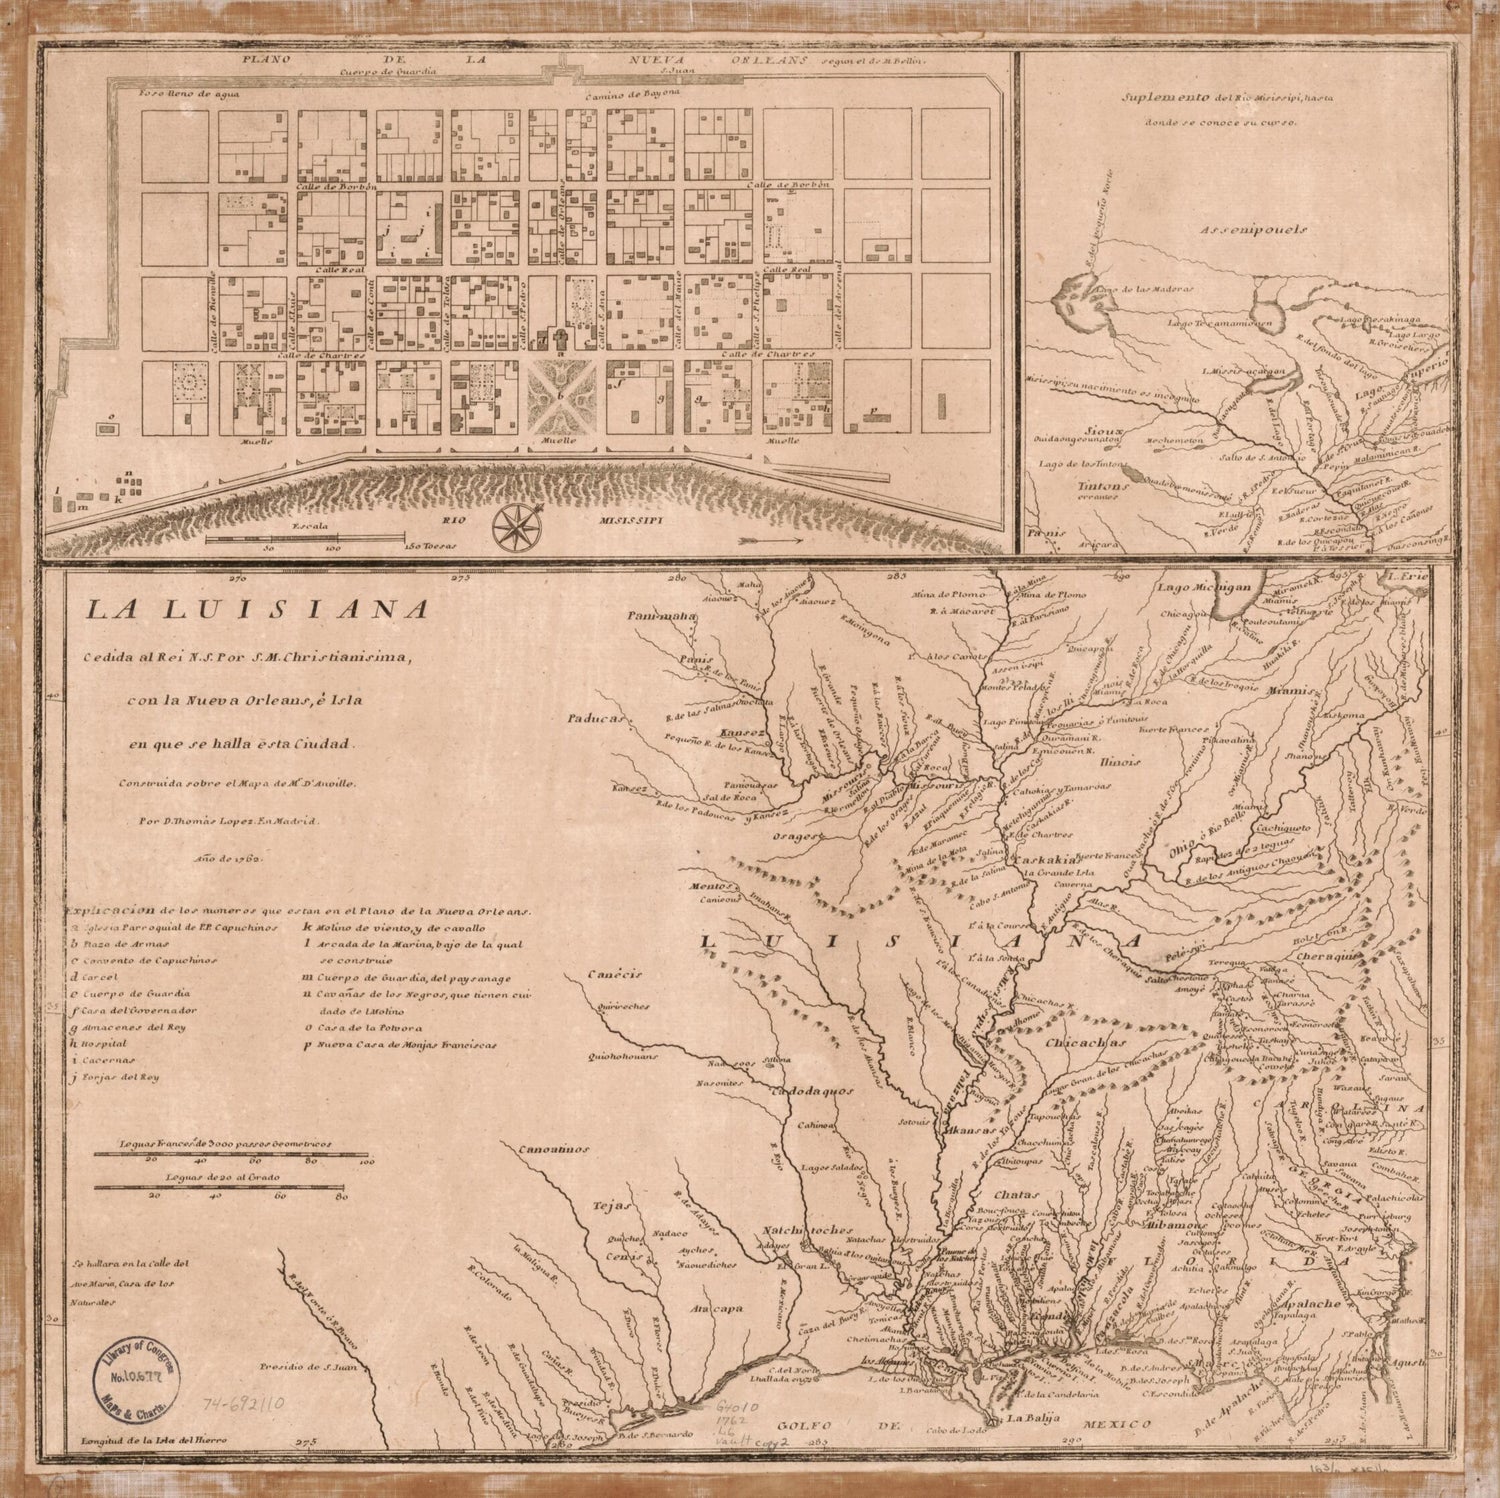 This old map of La Luisiana Cedida Al Rei N. S. Por S. M. Christianisima, Con La Nueva Orleans, è Isla En Que Se Halla Esta Ciudad. Construida Sobre El Mapa De Mr. D&